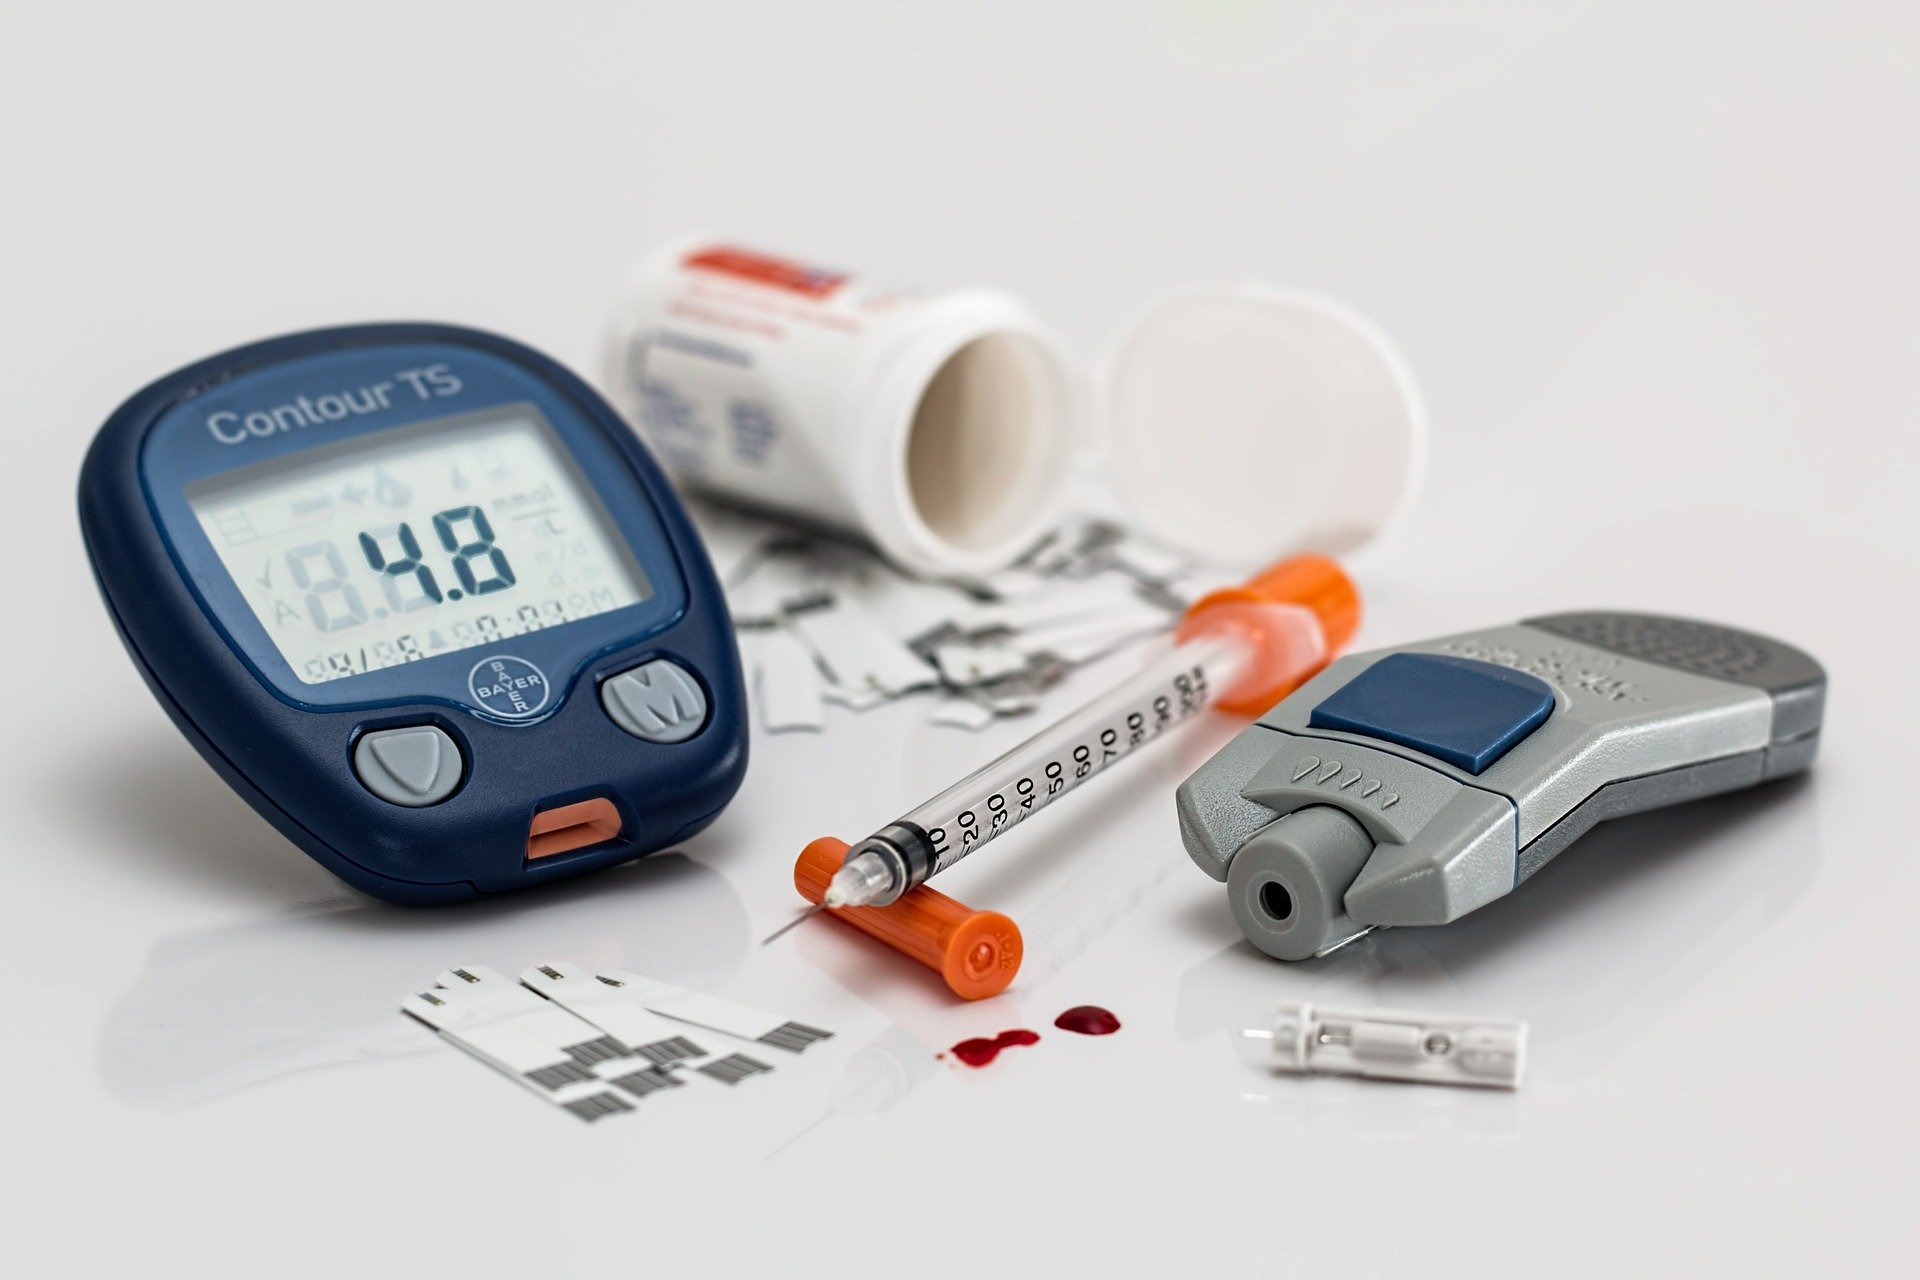 hipertenzija stupanj 2 koje bolesti za glukoze u krvi i visok krvni tlak